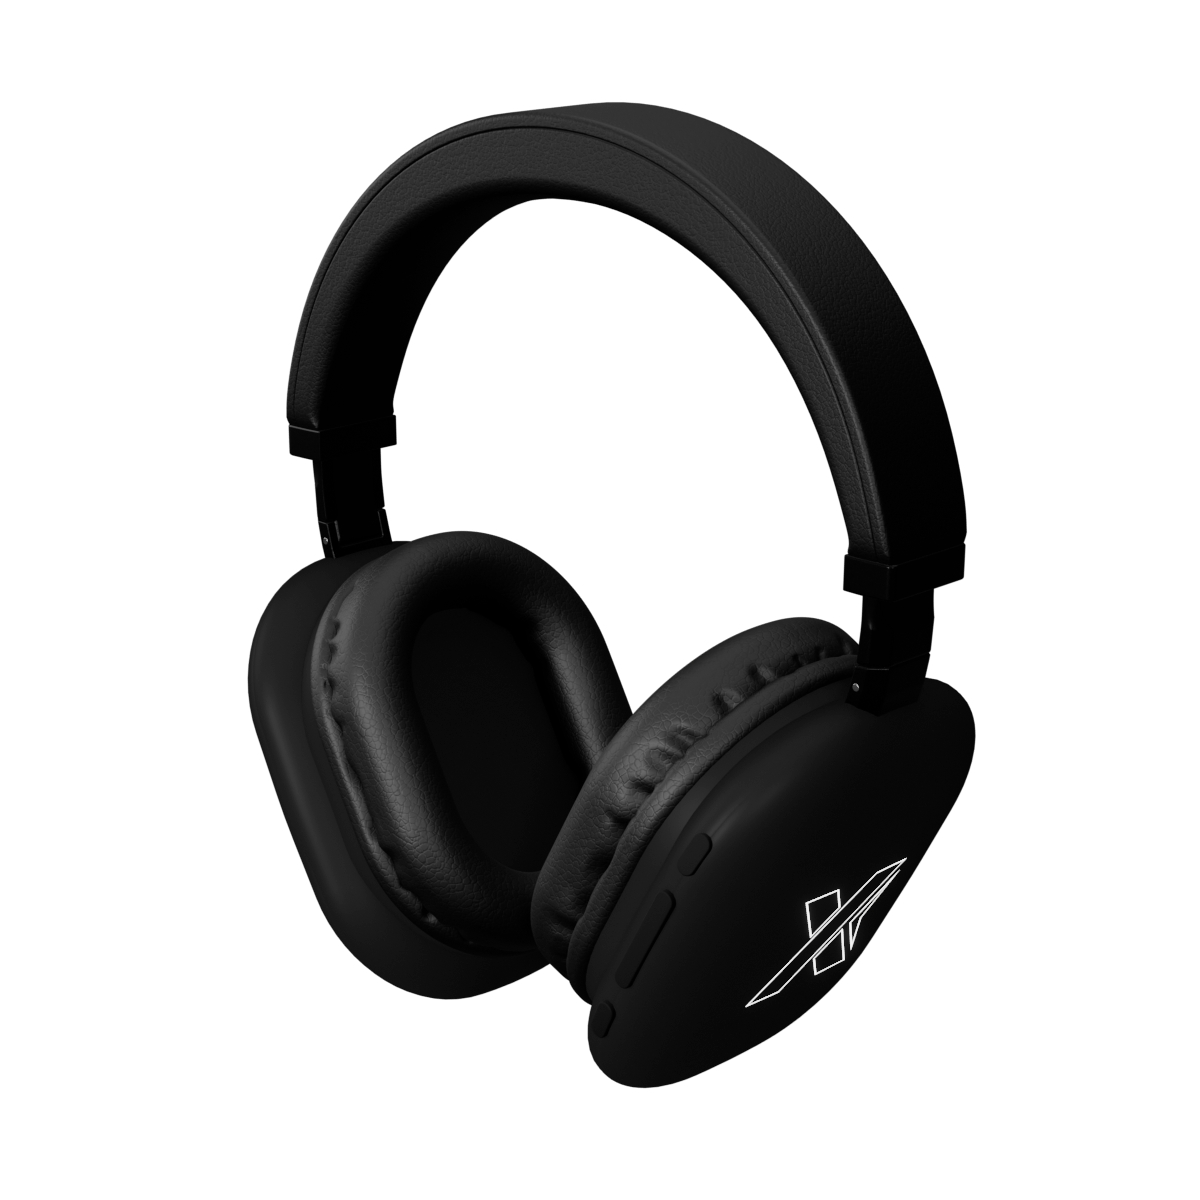 E21 - Wireless 5.1 headphones